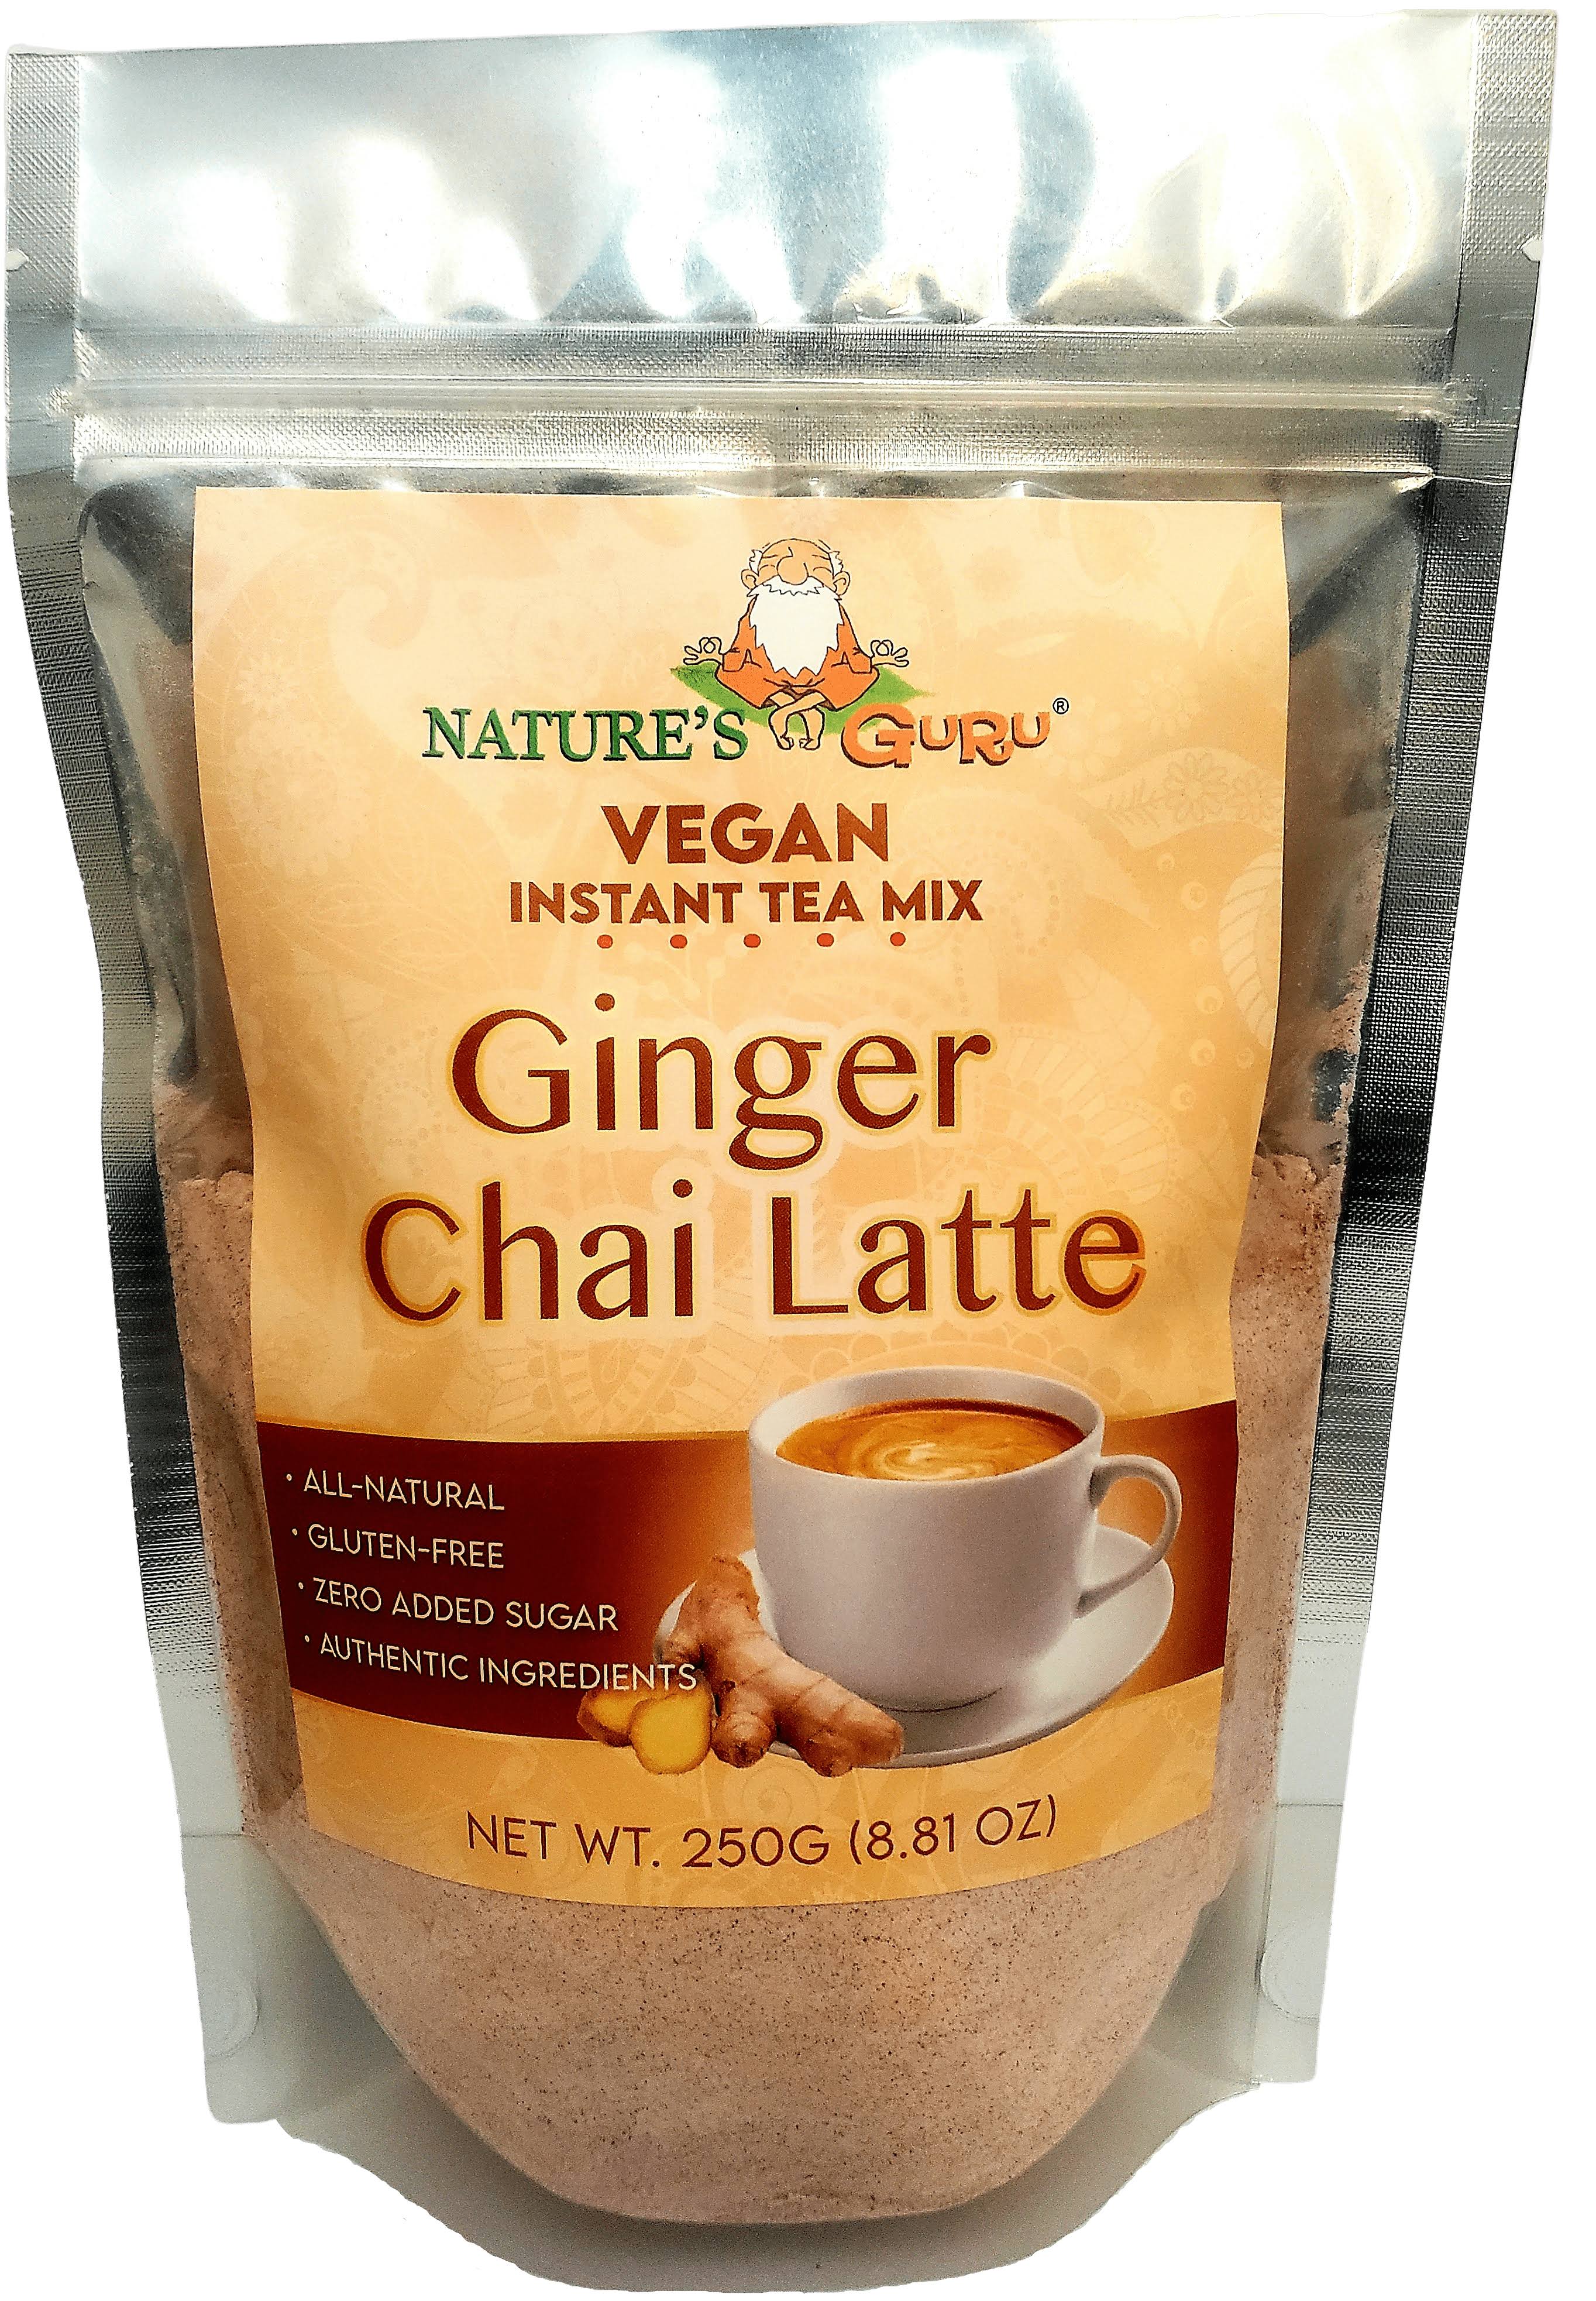 Vegan Ginger Chai Latte Instant Tea Mix I Nature's Guru I Gluten-Free